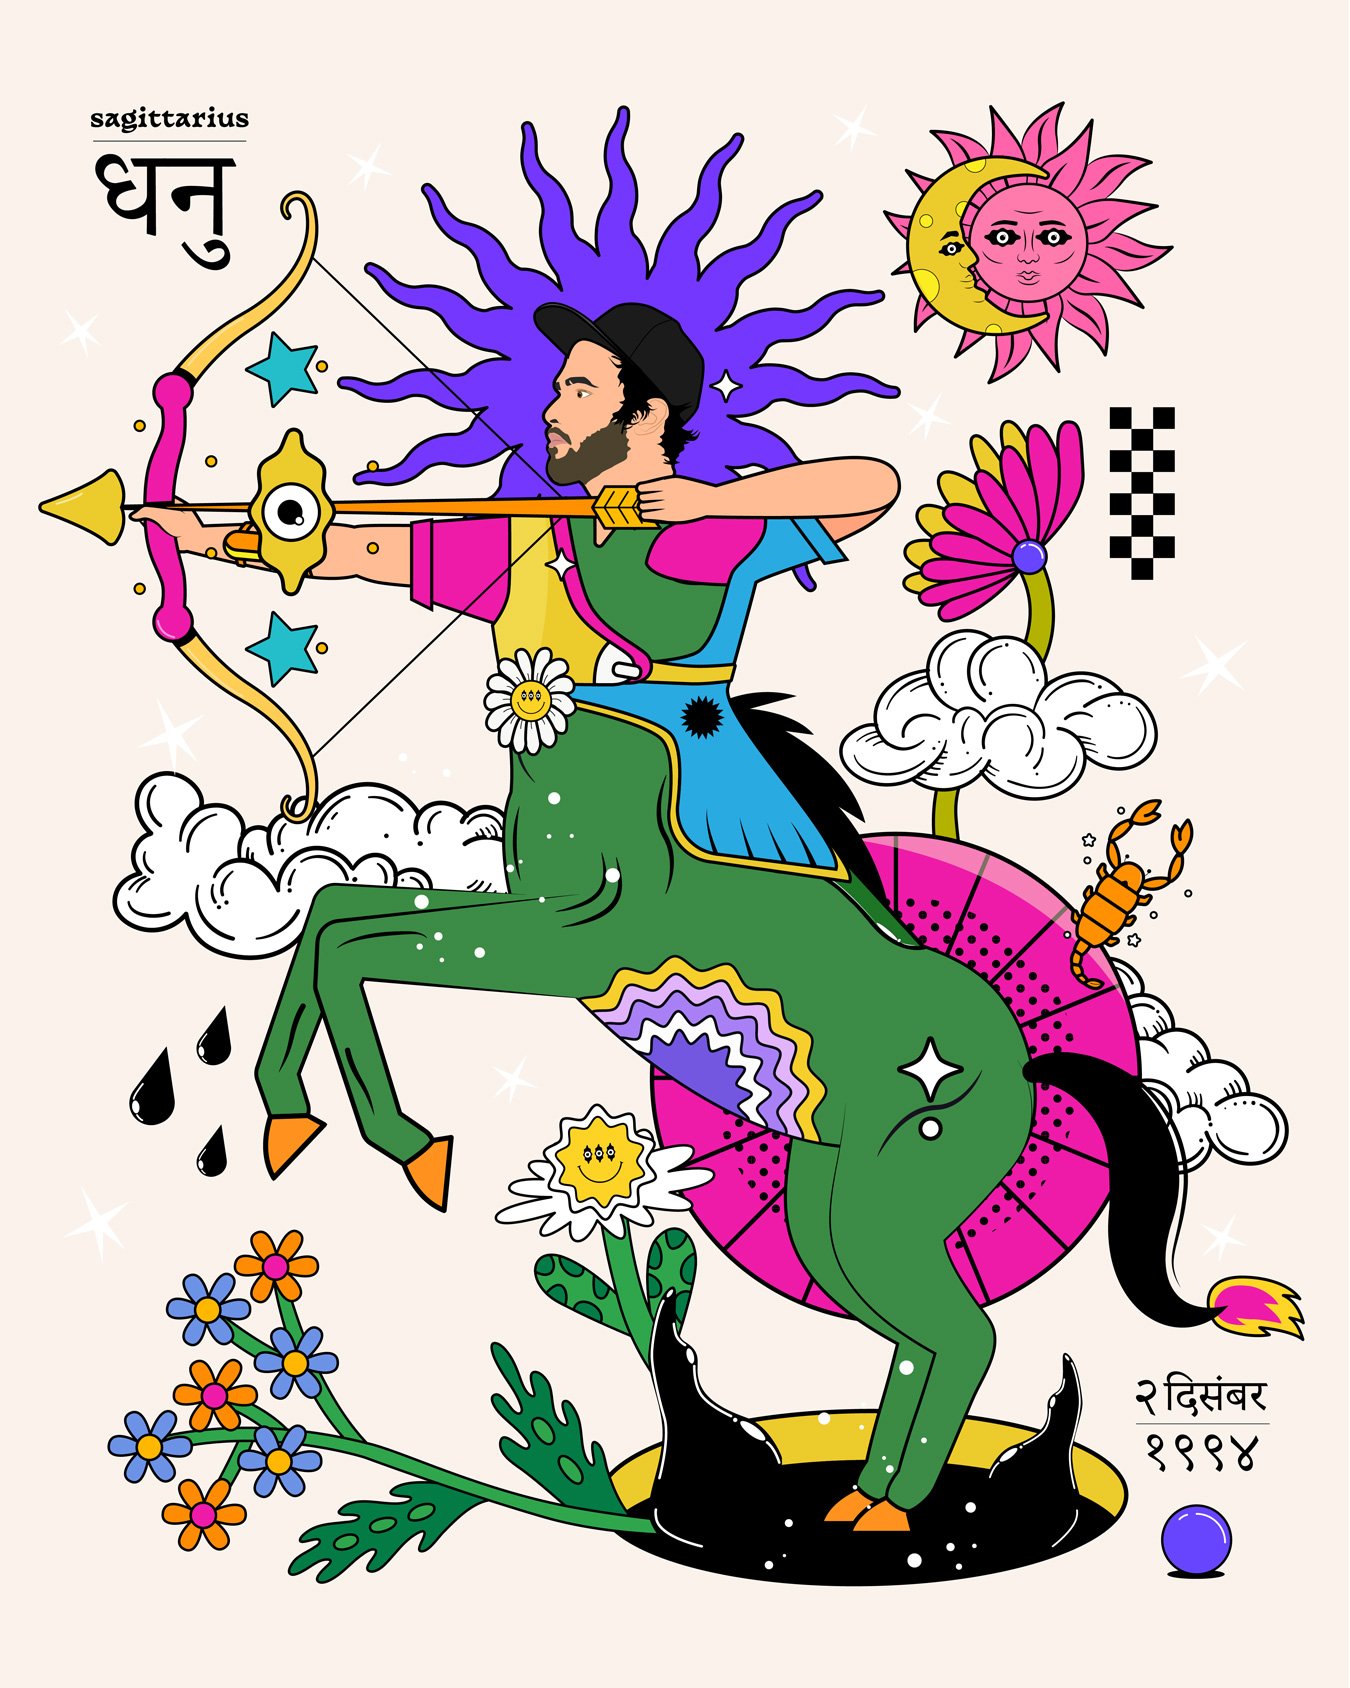 saggi-gang-by-Yash-Pradhan-Mumbai-Visual-Artist-Designer-Zodiac-Sign.jpg